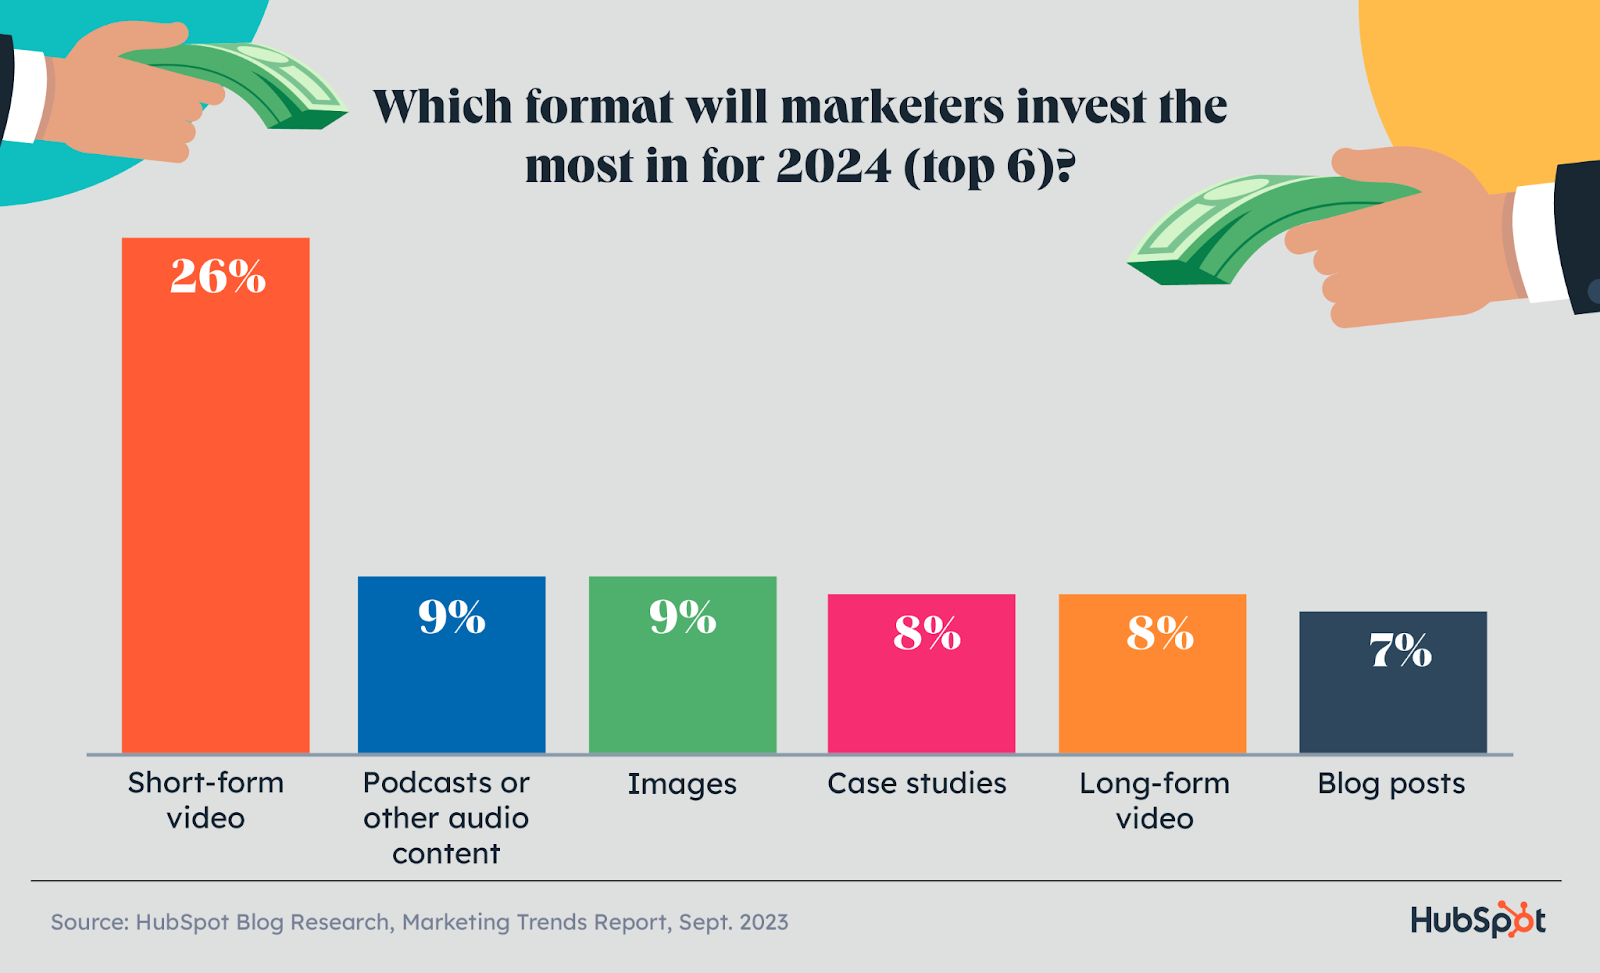 korte video’s zullen in 2024 de meeste marketinginvesteringen ontvangen vergeleken met andere soorten inhoud